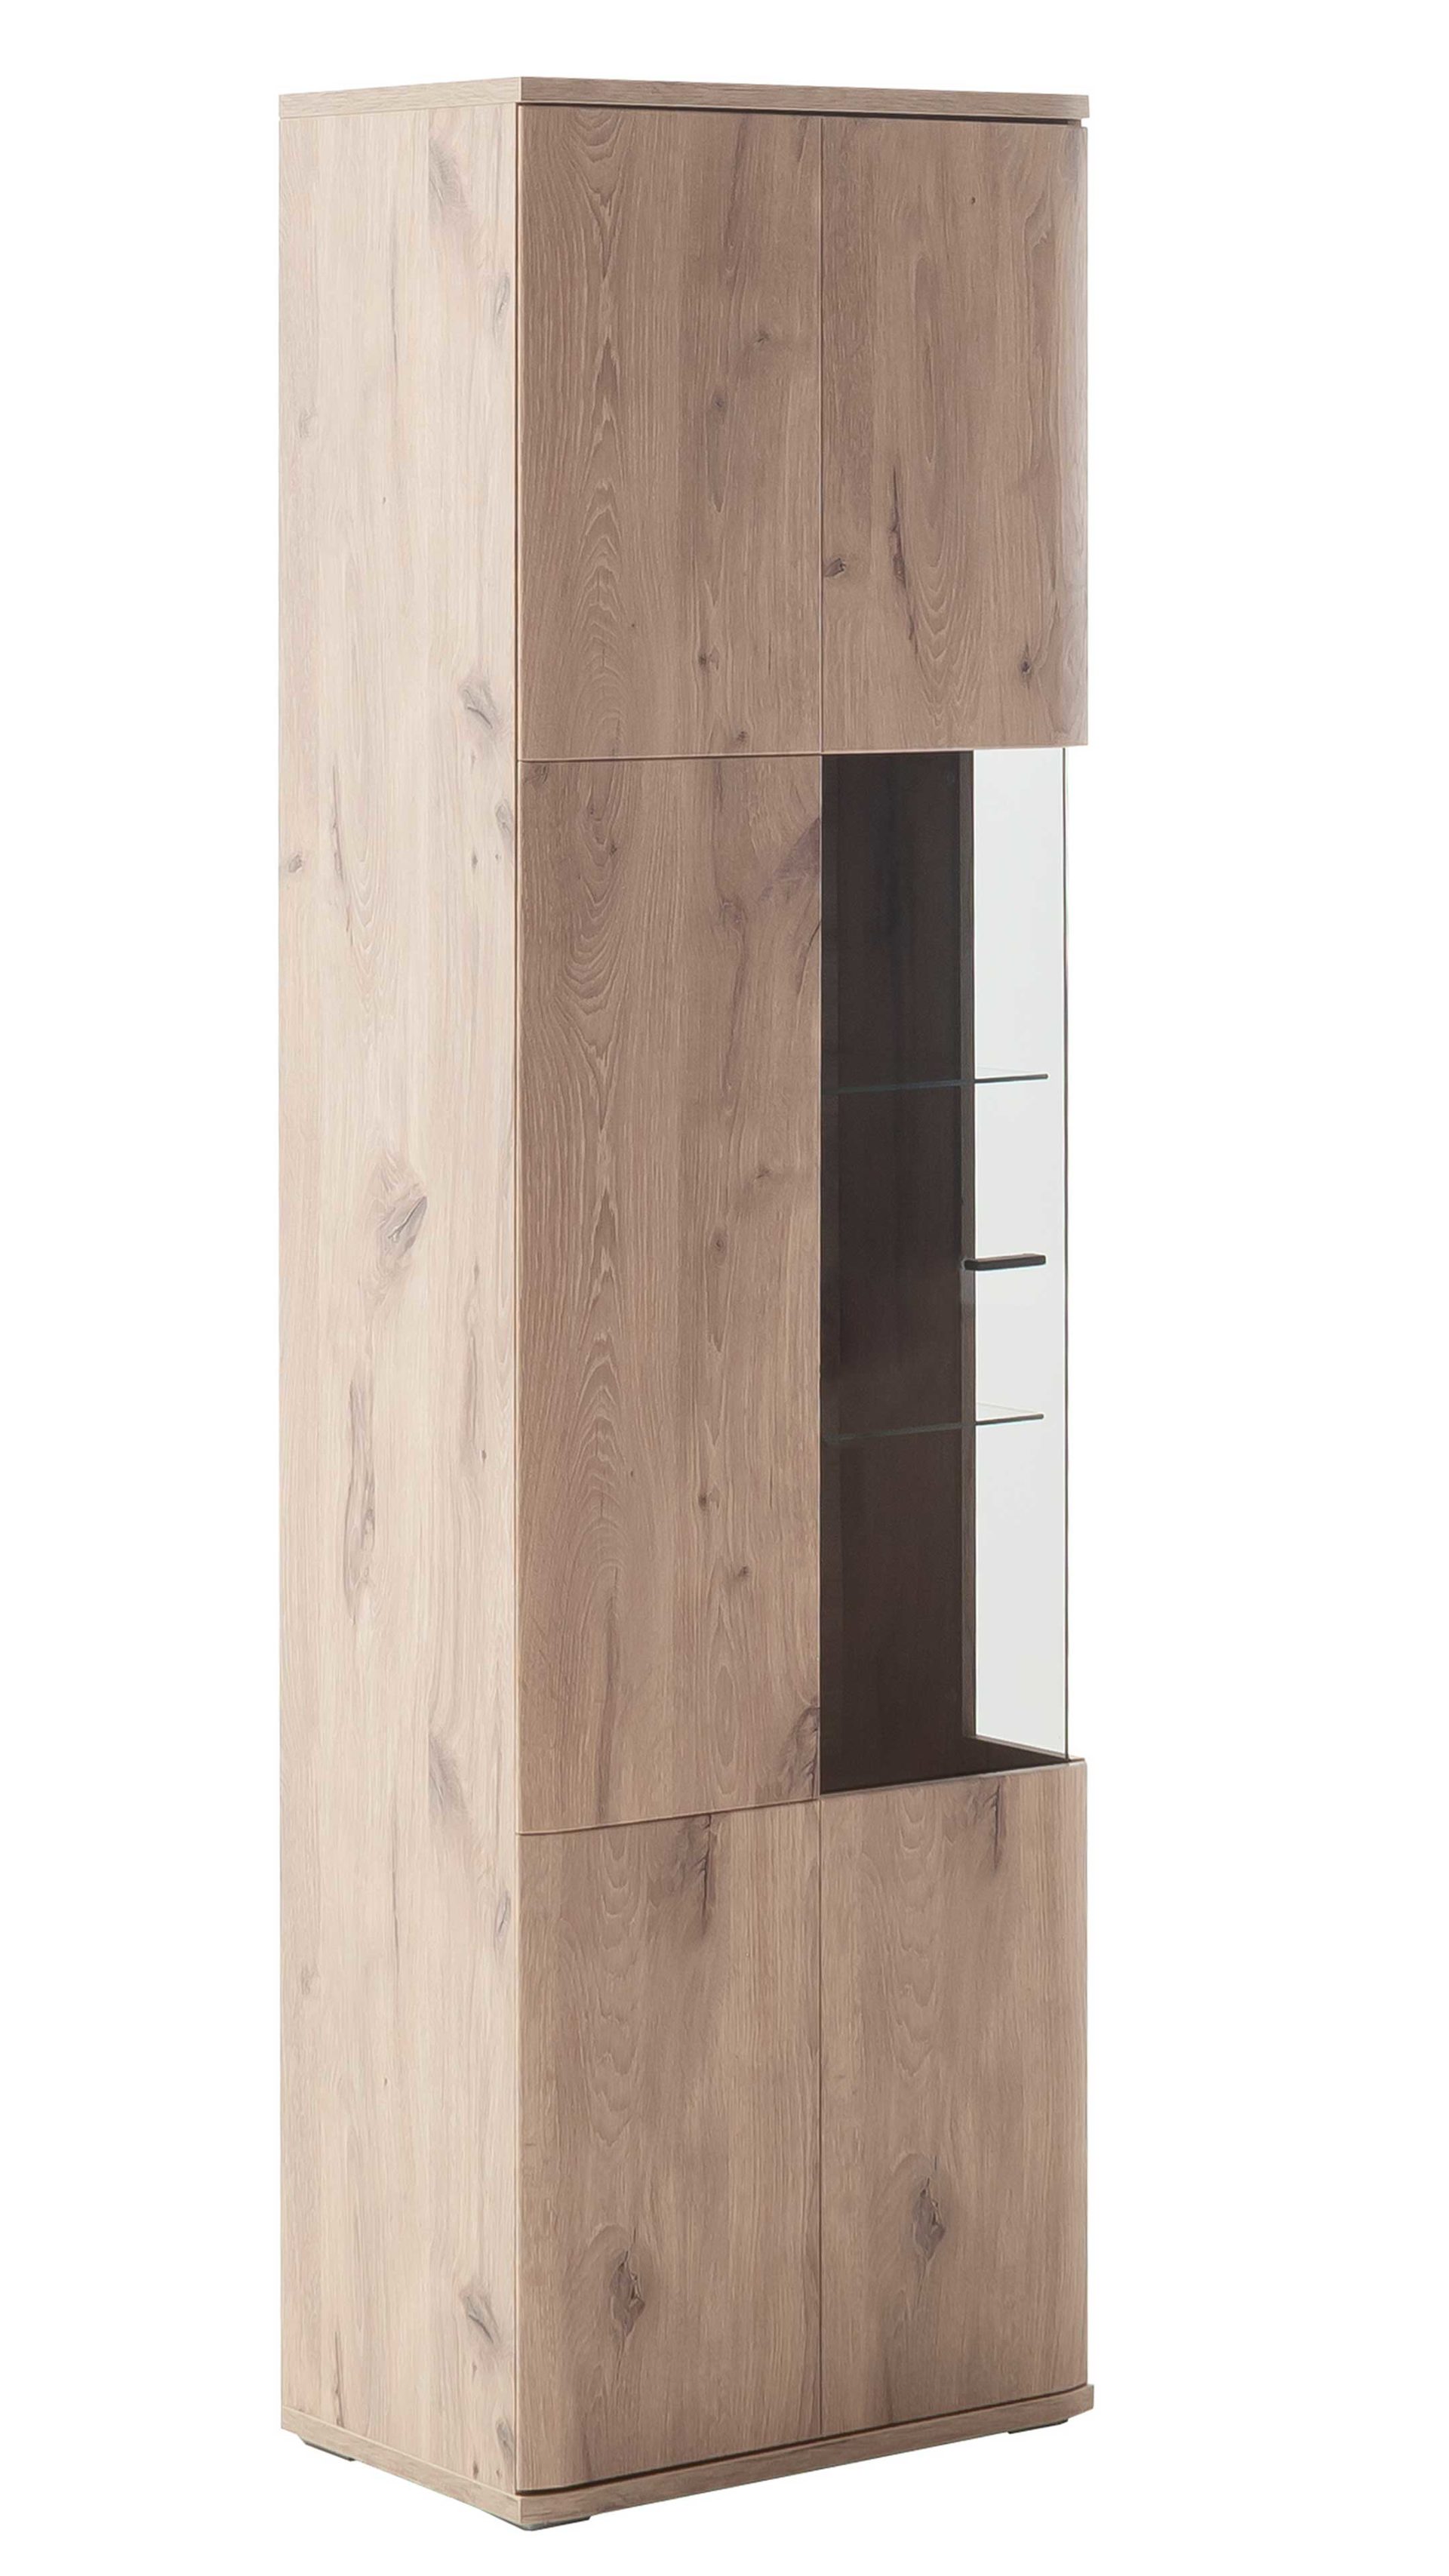 Vitrine Mca furniture aus Holz in Holzfarben Wohnprogramm Prato - Vitrine Viking Oak, eine Tür - Höhe ca. 199 cm